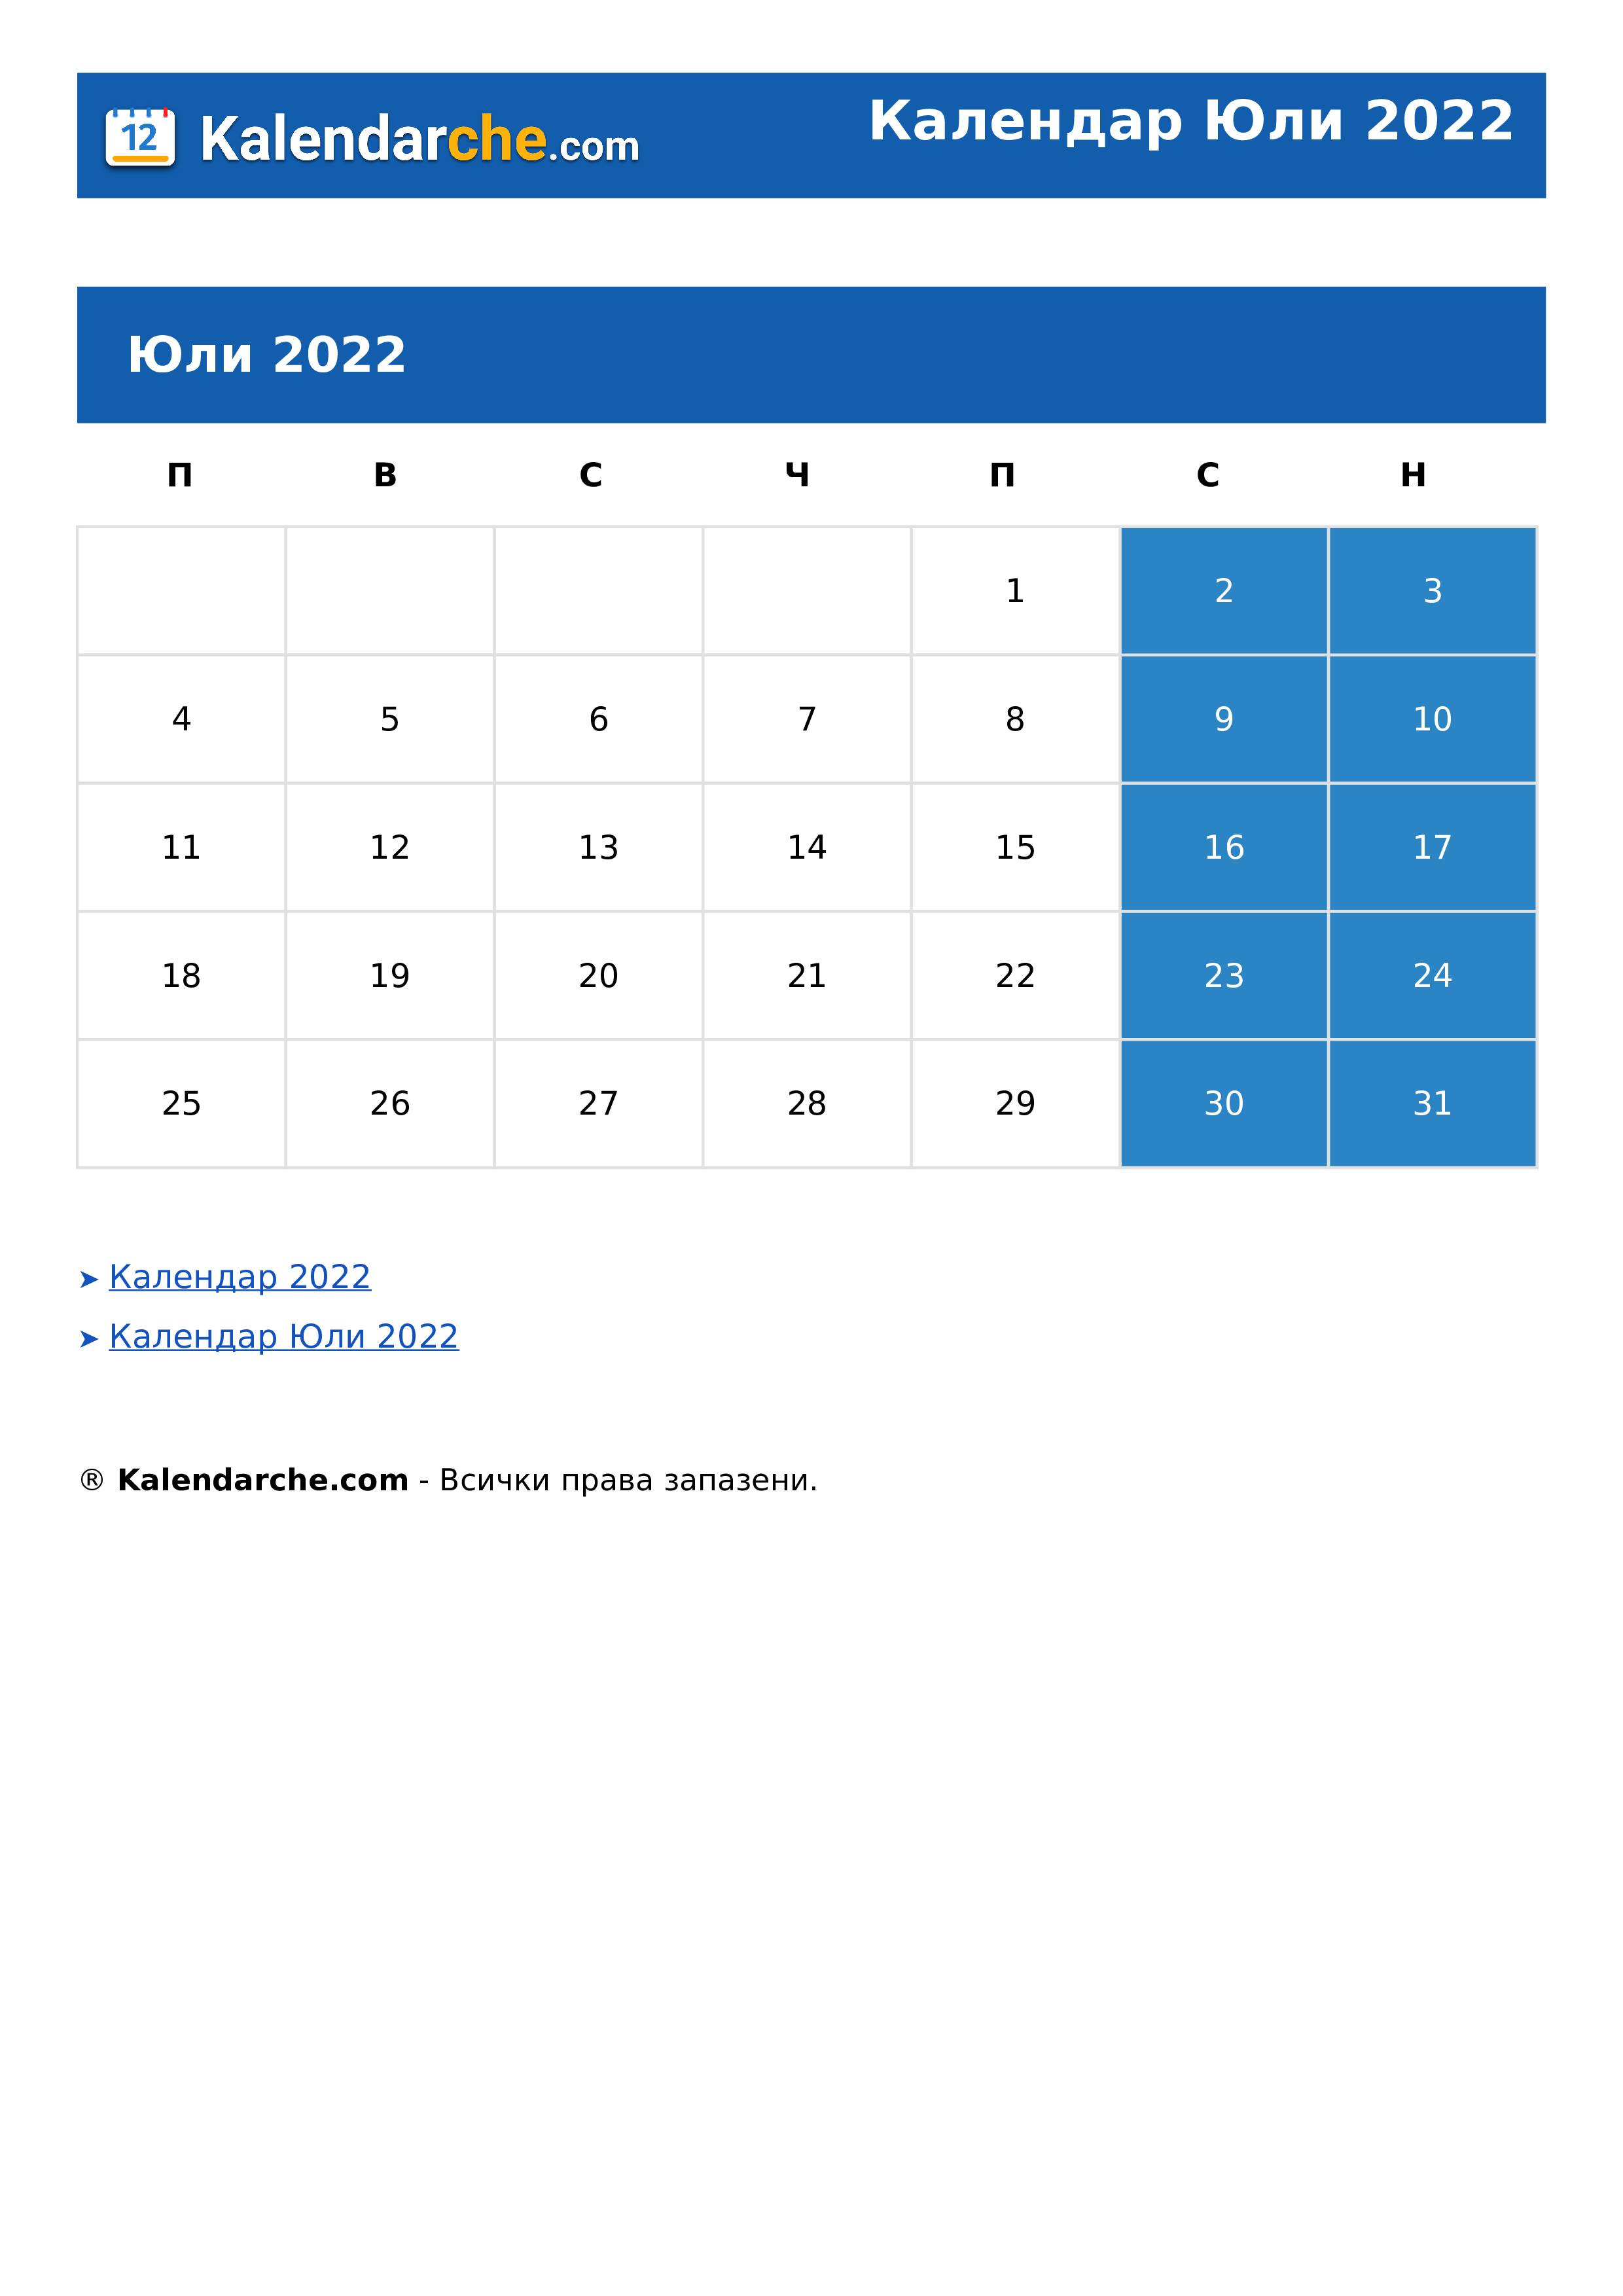 Календар Юли 2022